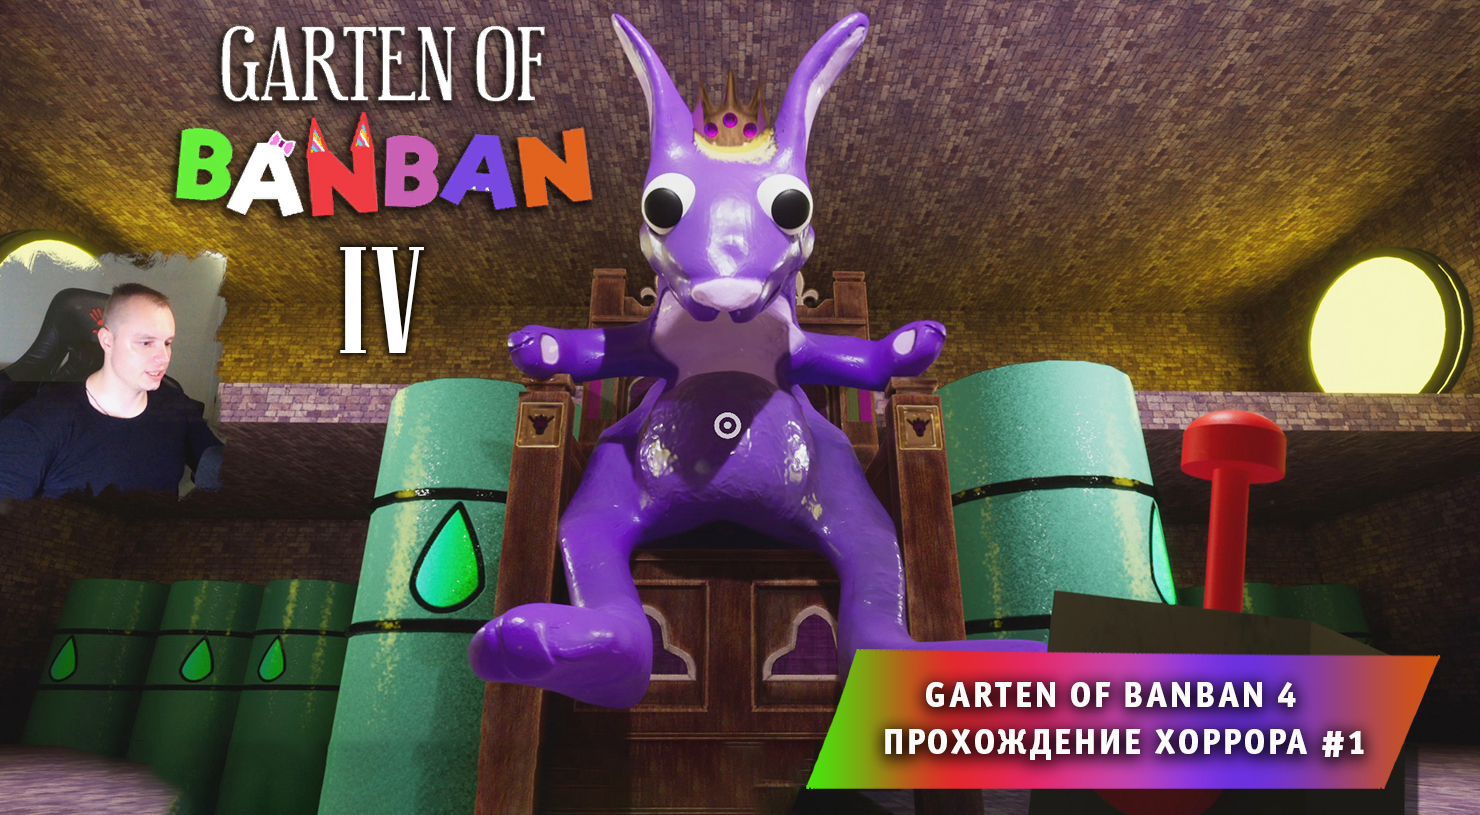 Банбан 4 ➤ Garten of banban 4 глава ➤ Прохождение игры ➤ 1 серия ➤ Детский сад БанБан